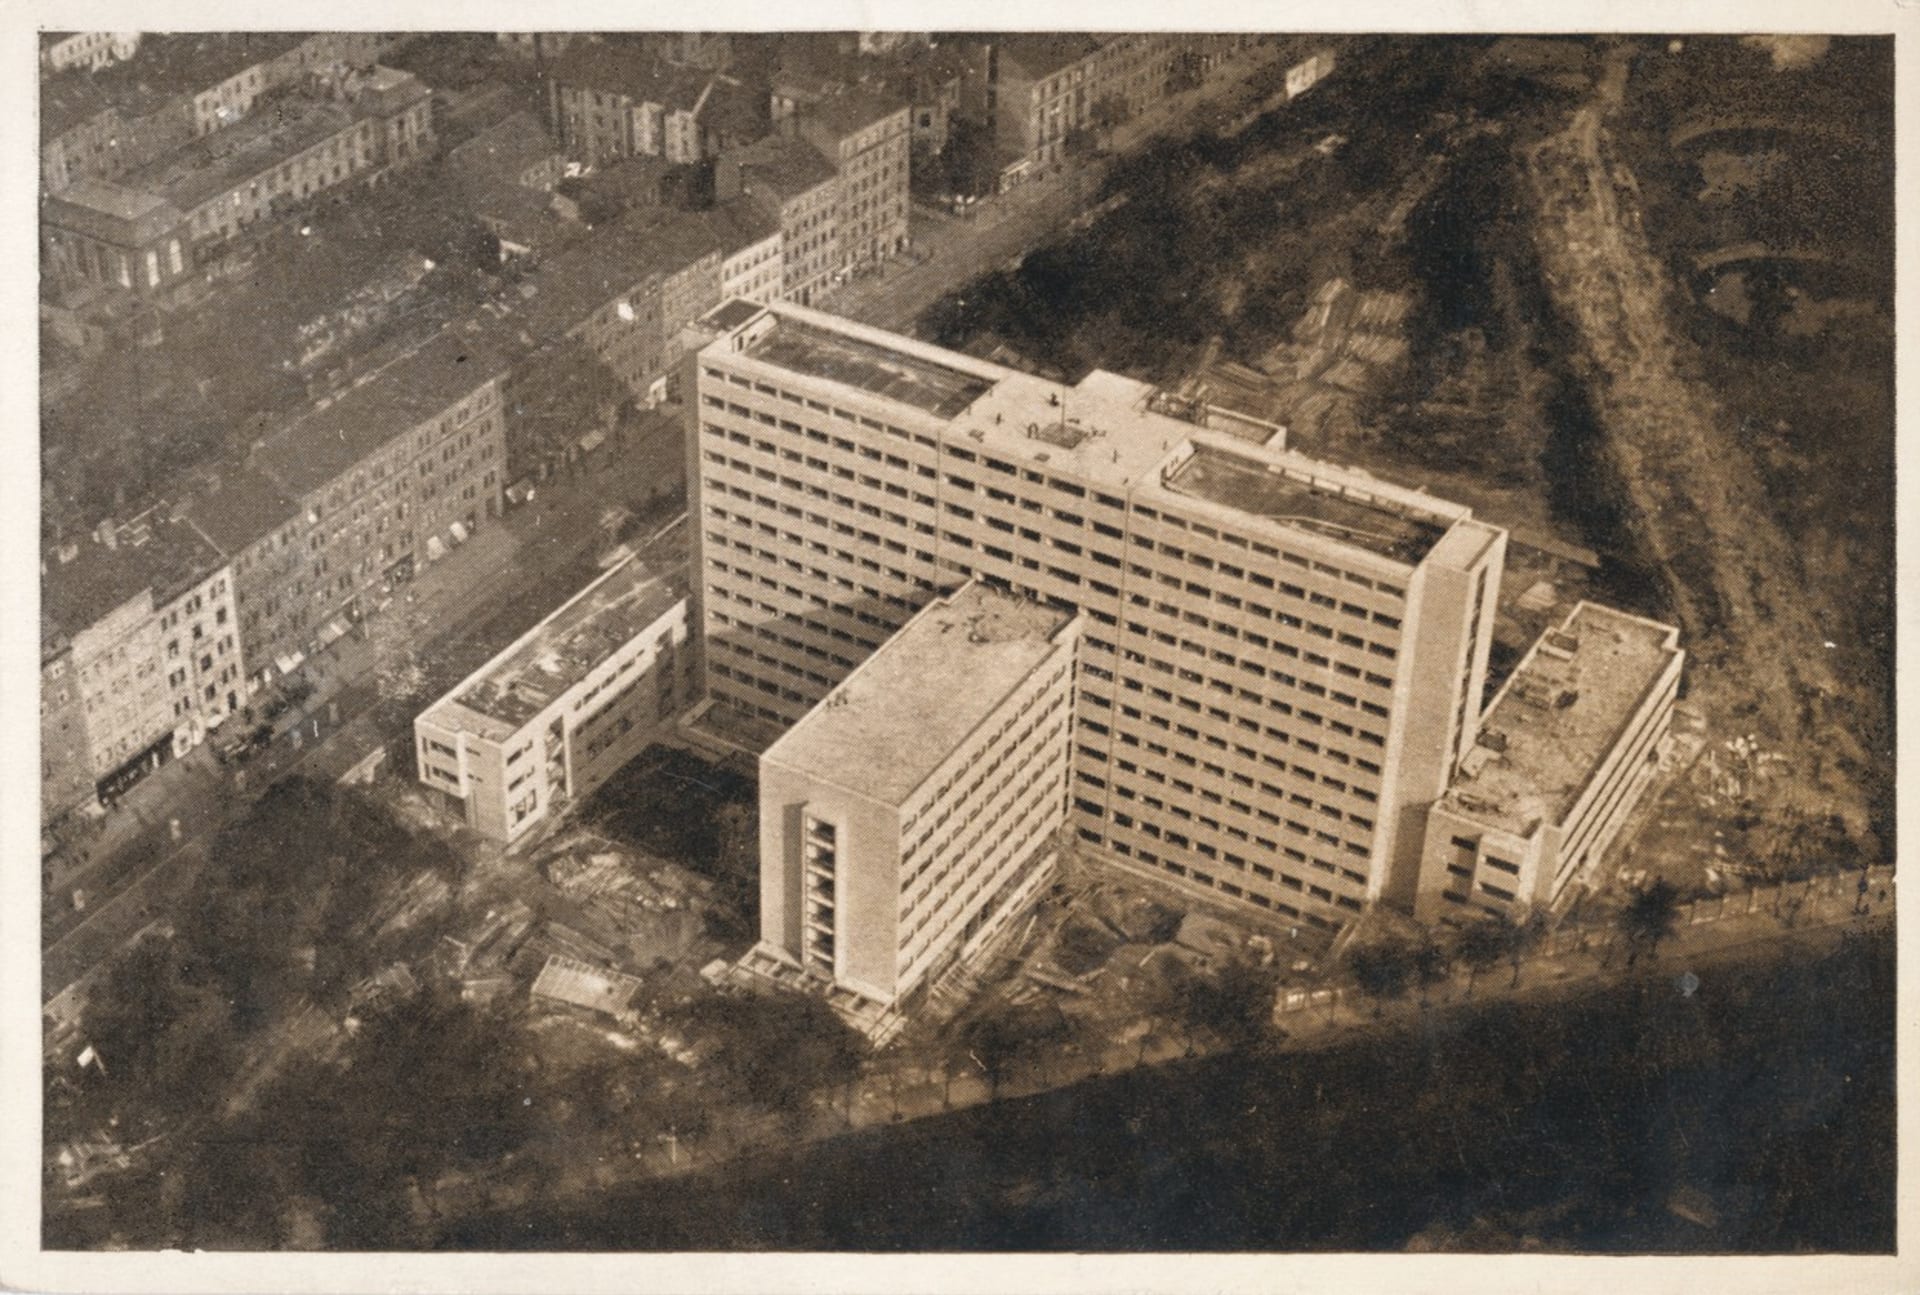 Bývalý Dům odborových svazů, dnes dům Radost, vznikl už v letech 1932 -1934 pro Všeobecný penzijní ústav, v roce 1951 budovu přebrala Ústřední rada odborů.